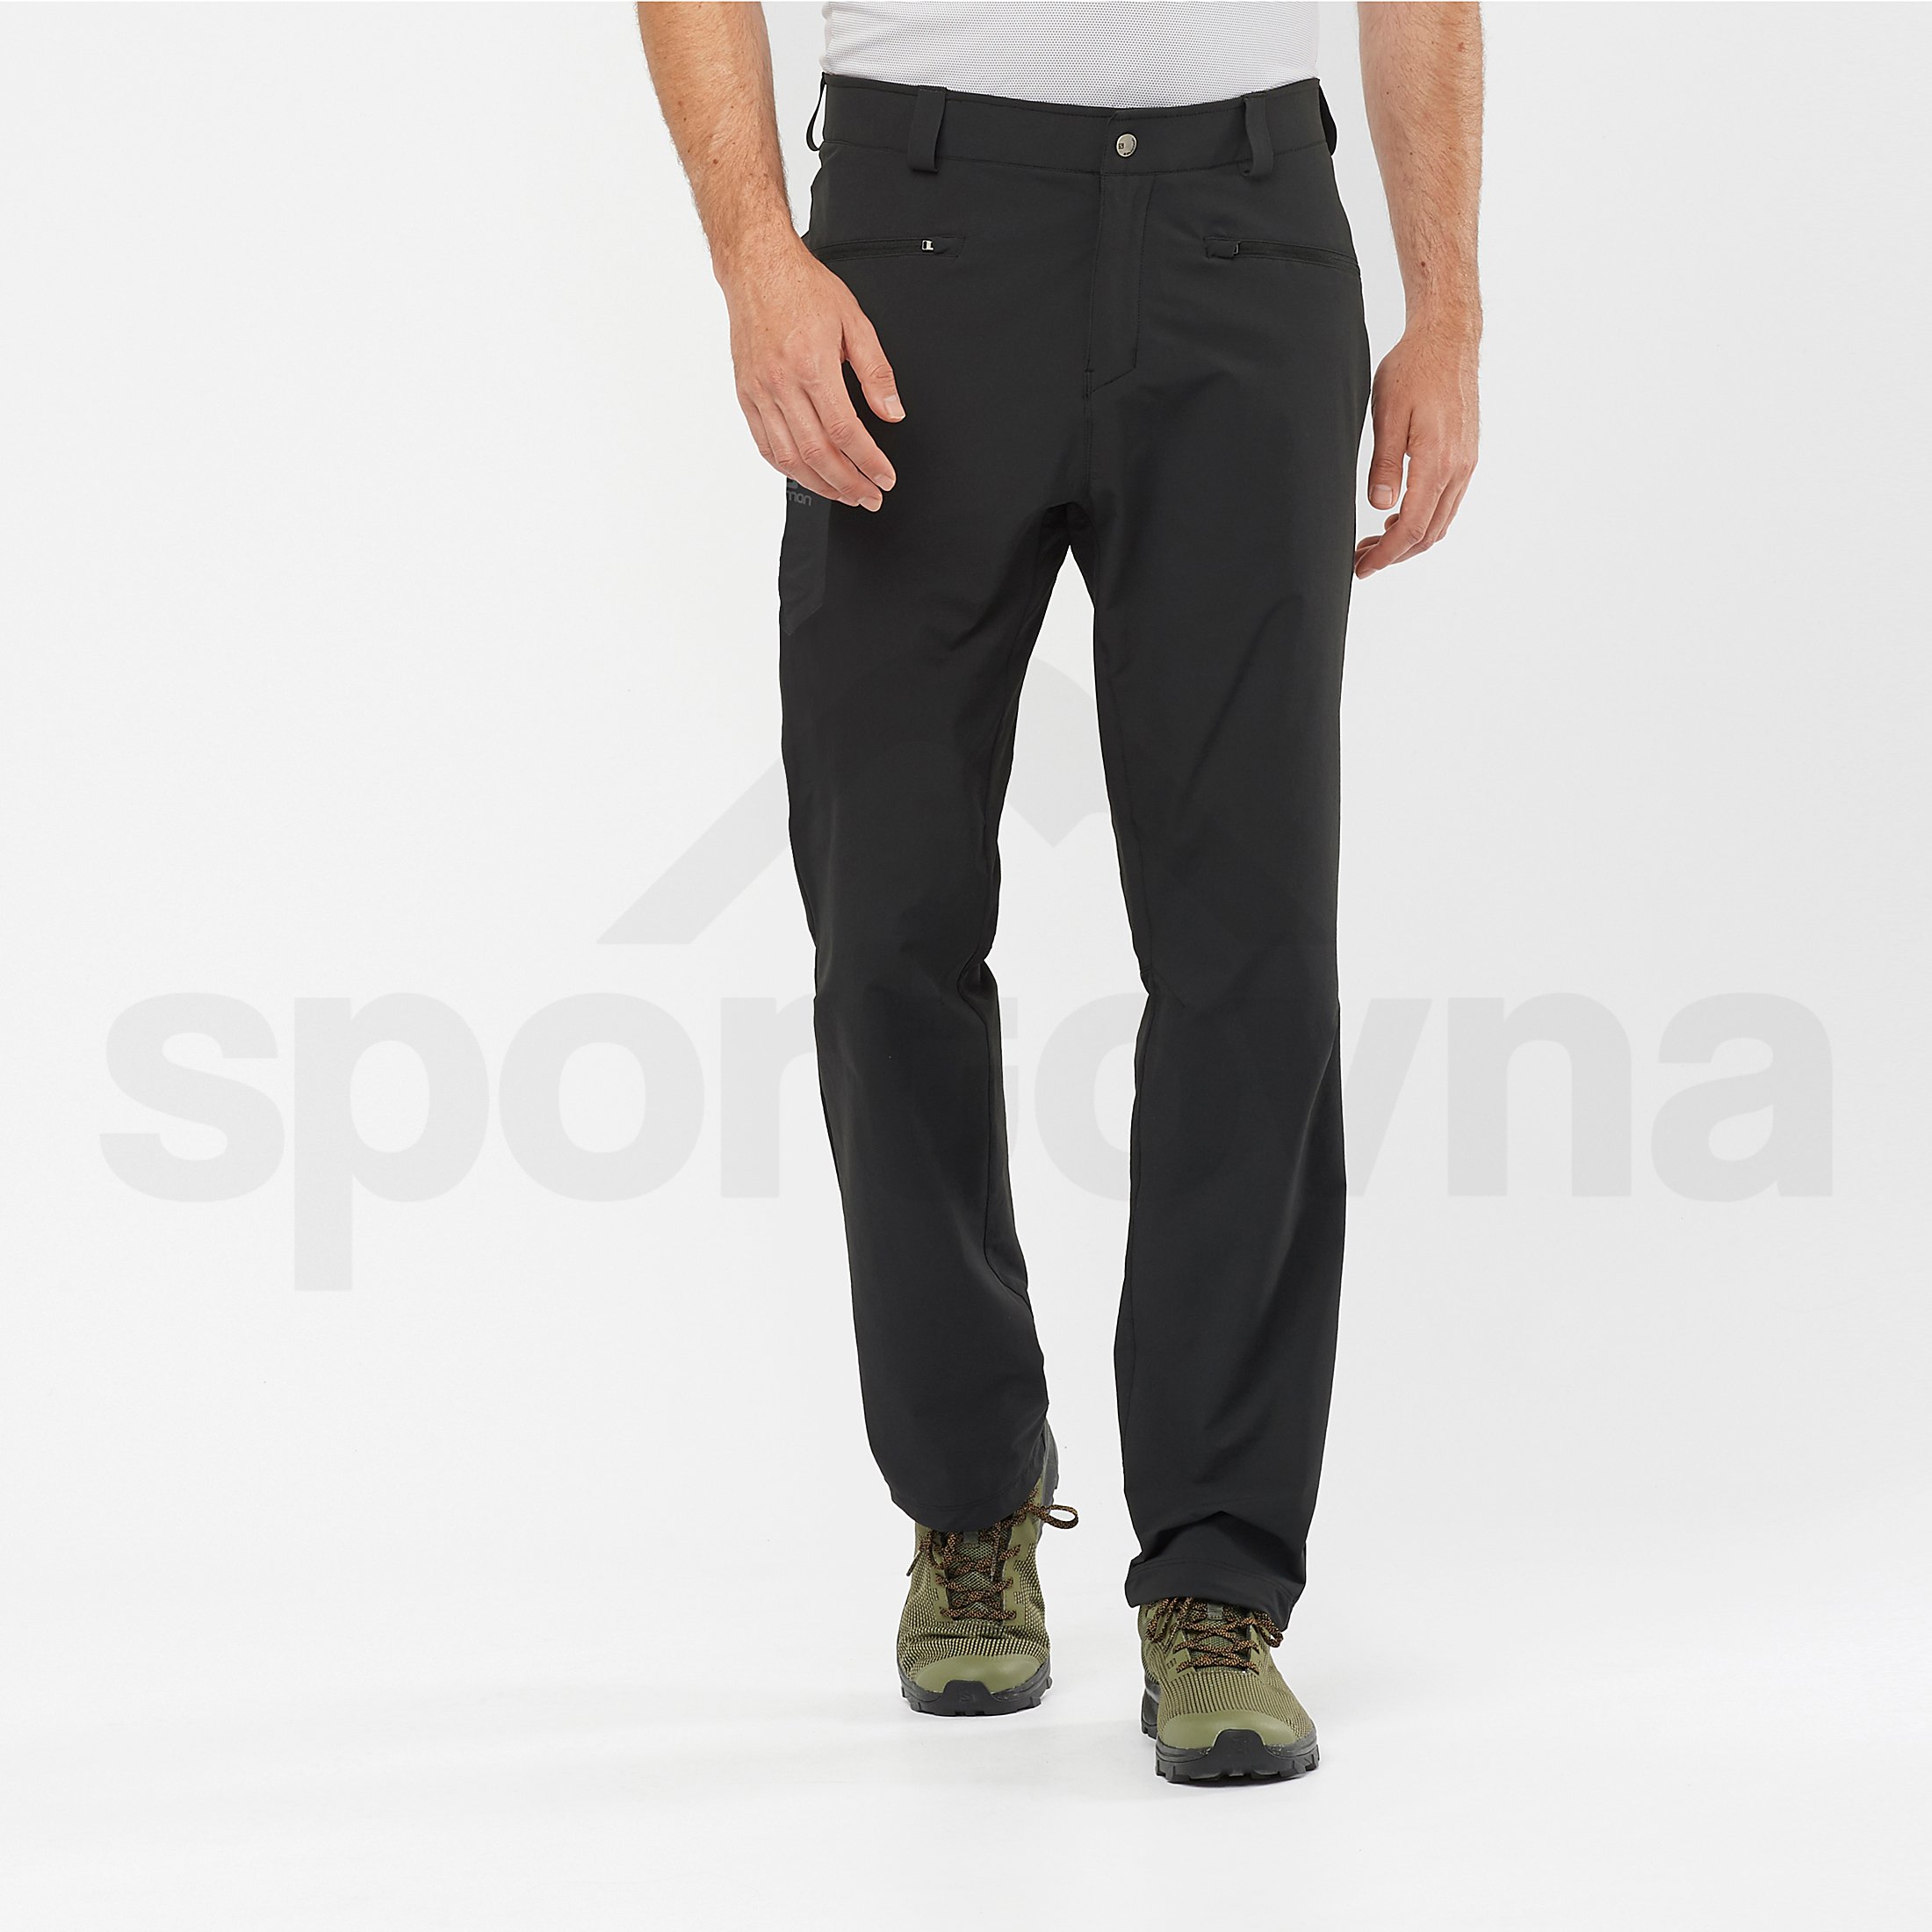 Kalhoty Salomon Wayfarer Straight Pant M - černá (standardní délka)